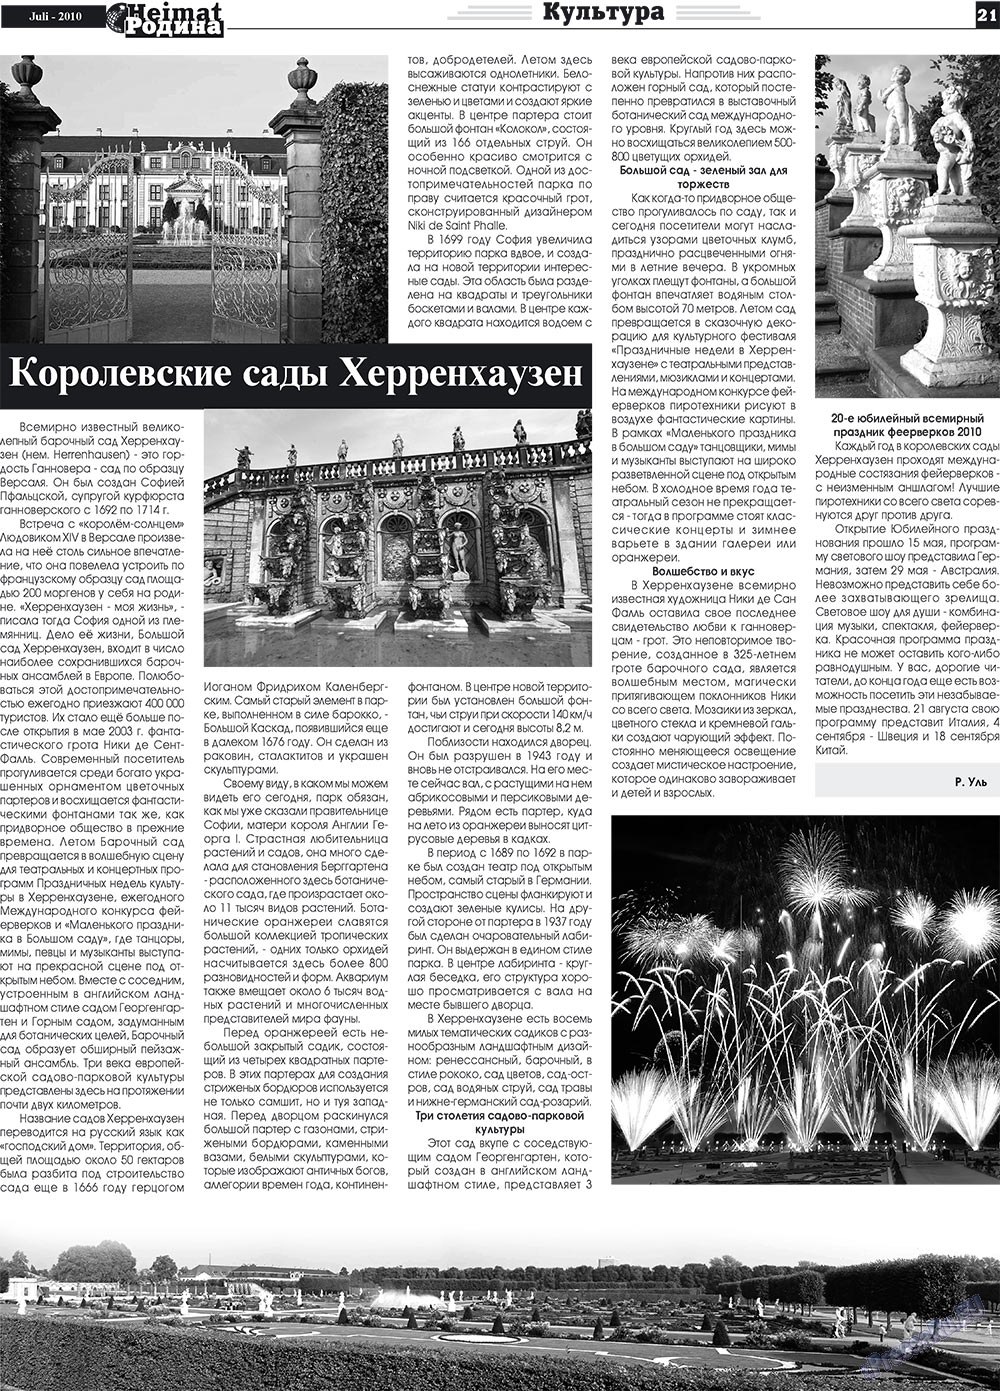 Heimat-Родина (газета). 2010 год, номер 7, стр. 21